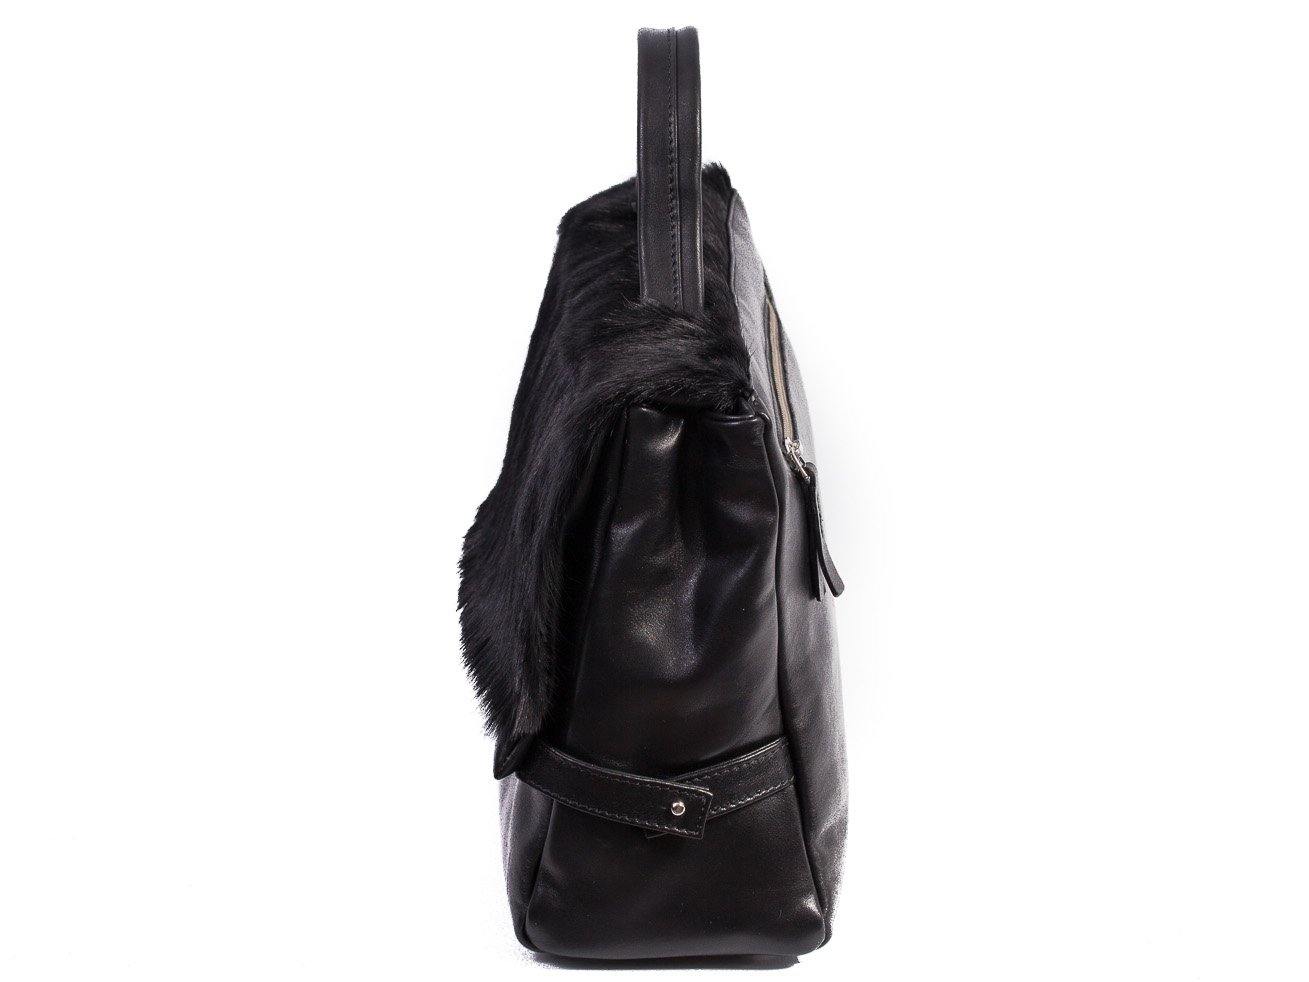 sherene melinda springbok hair-on-hide black leather smith tote bag Stripe side